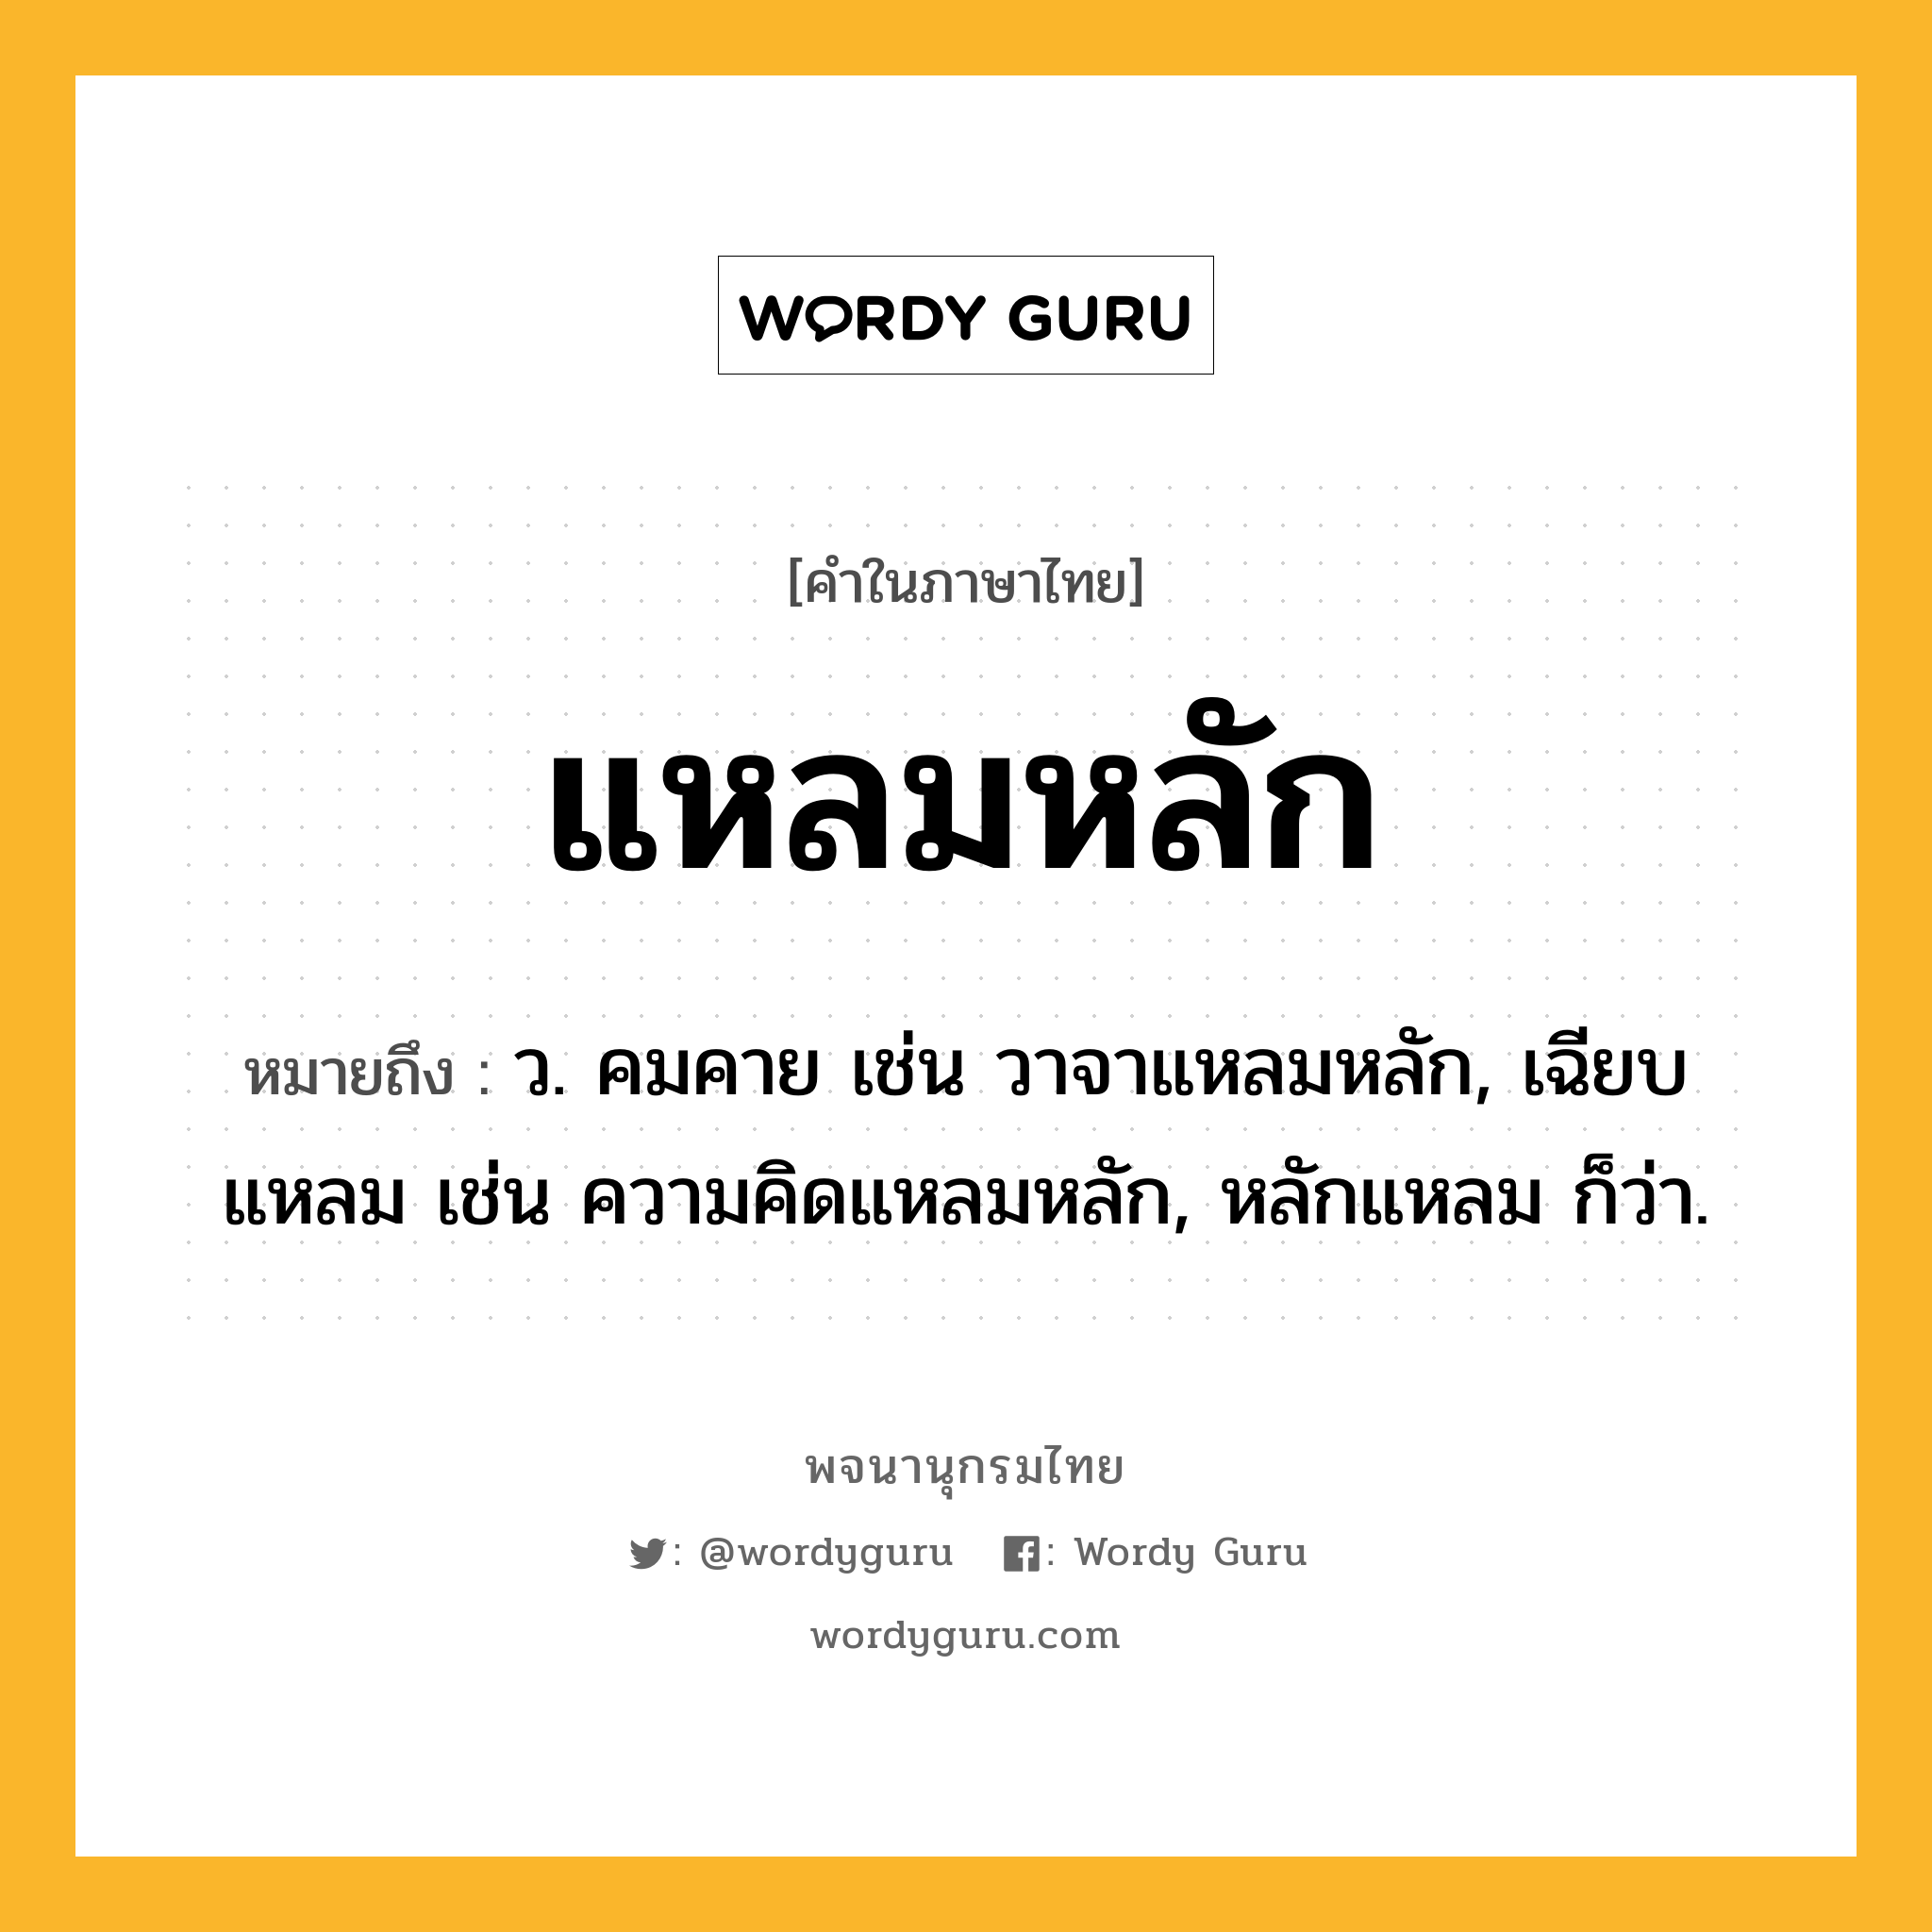 แหลมหลัก ความหมาย หมายถึงอะไร?, คำในภาษาไทย แหลมหลัก หมายถึง ว. คมคาย เช่น วาจาแหลมหลัก, เฉียบแหลม เช่น ความคิดแหลมหลัก, หลักแหลม ก็ว่า.